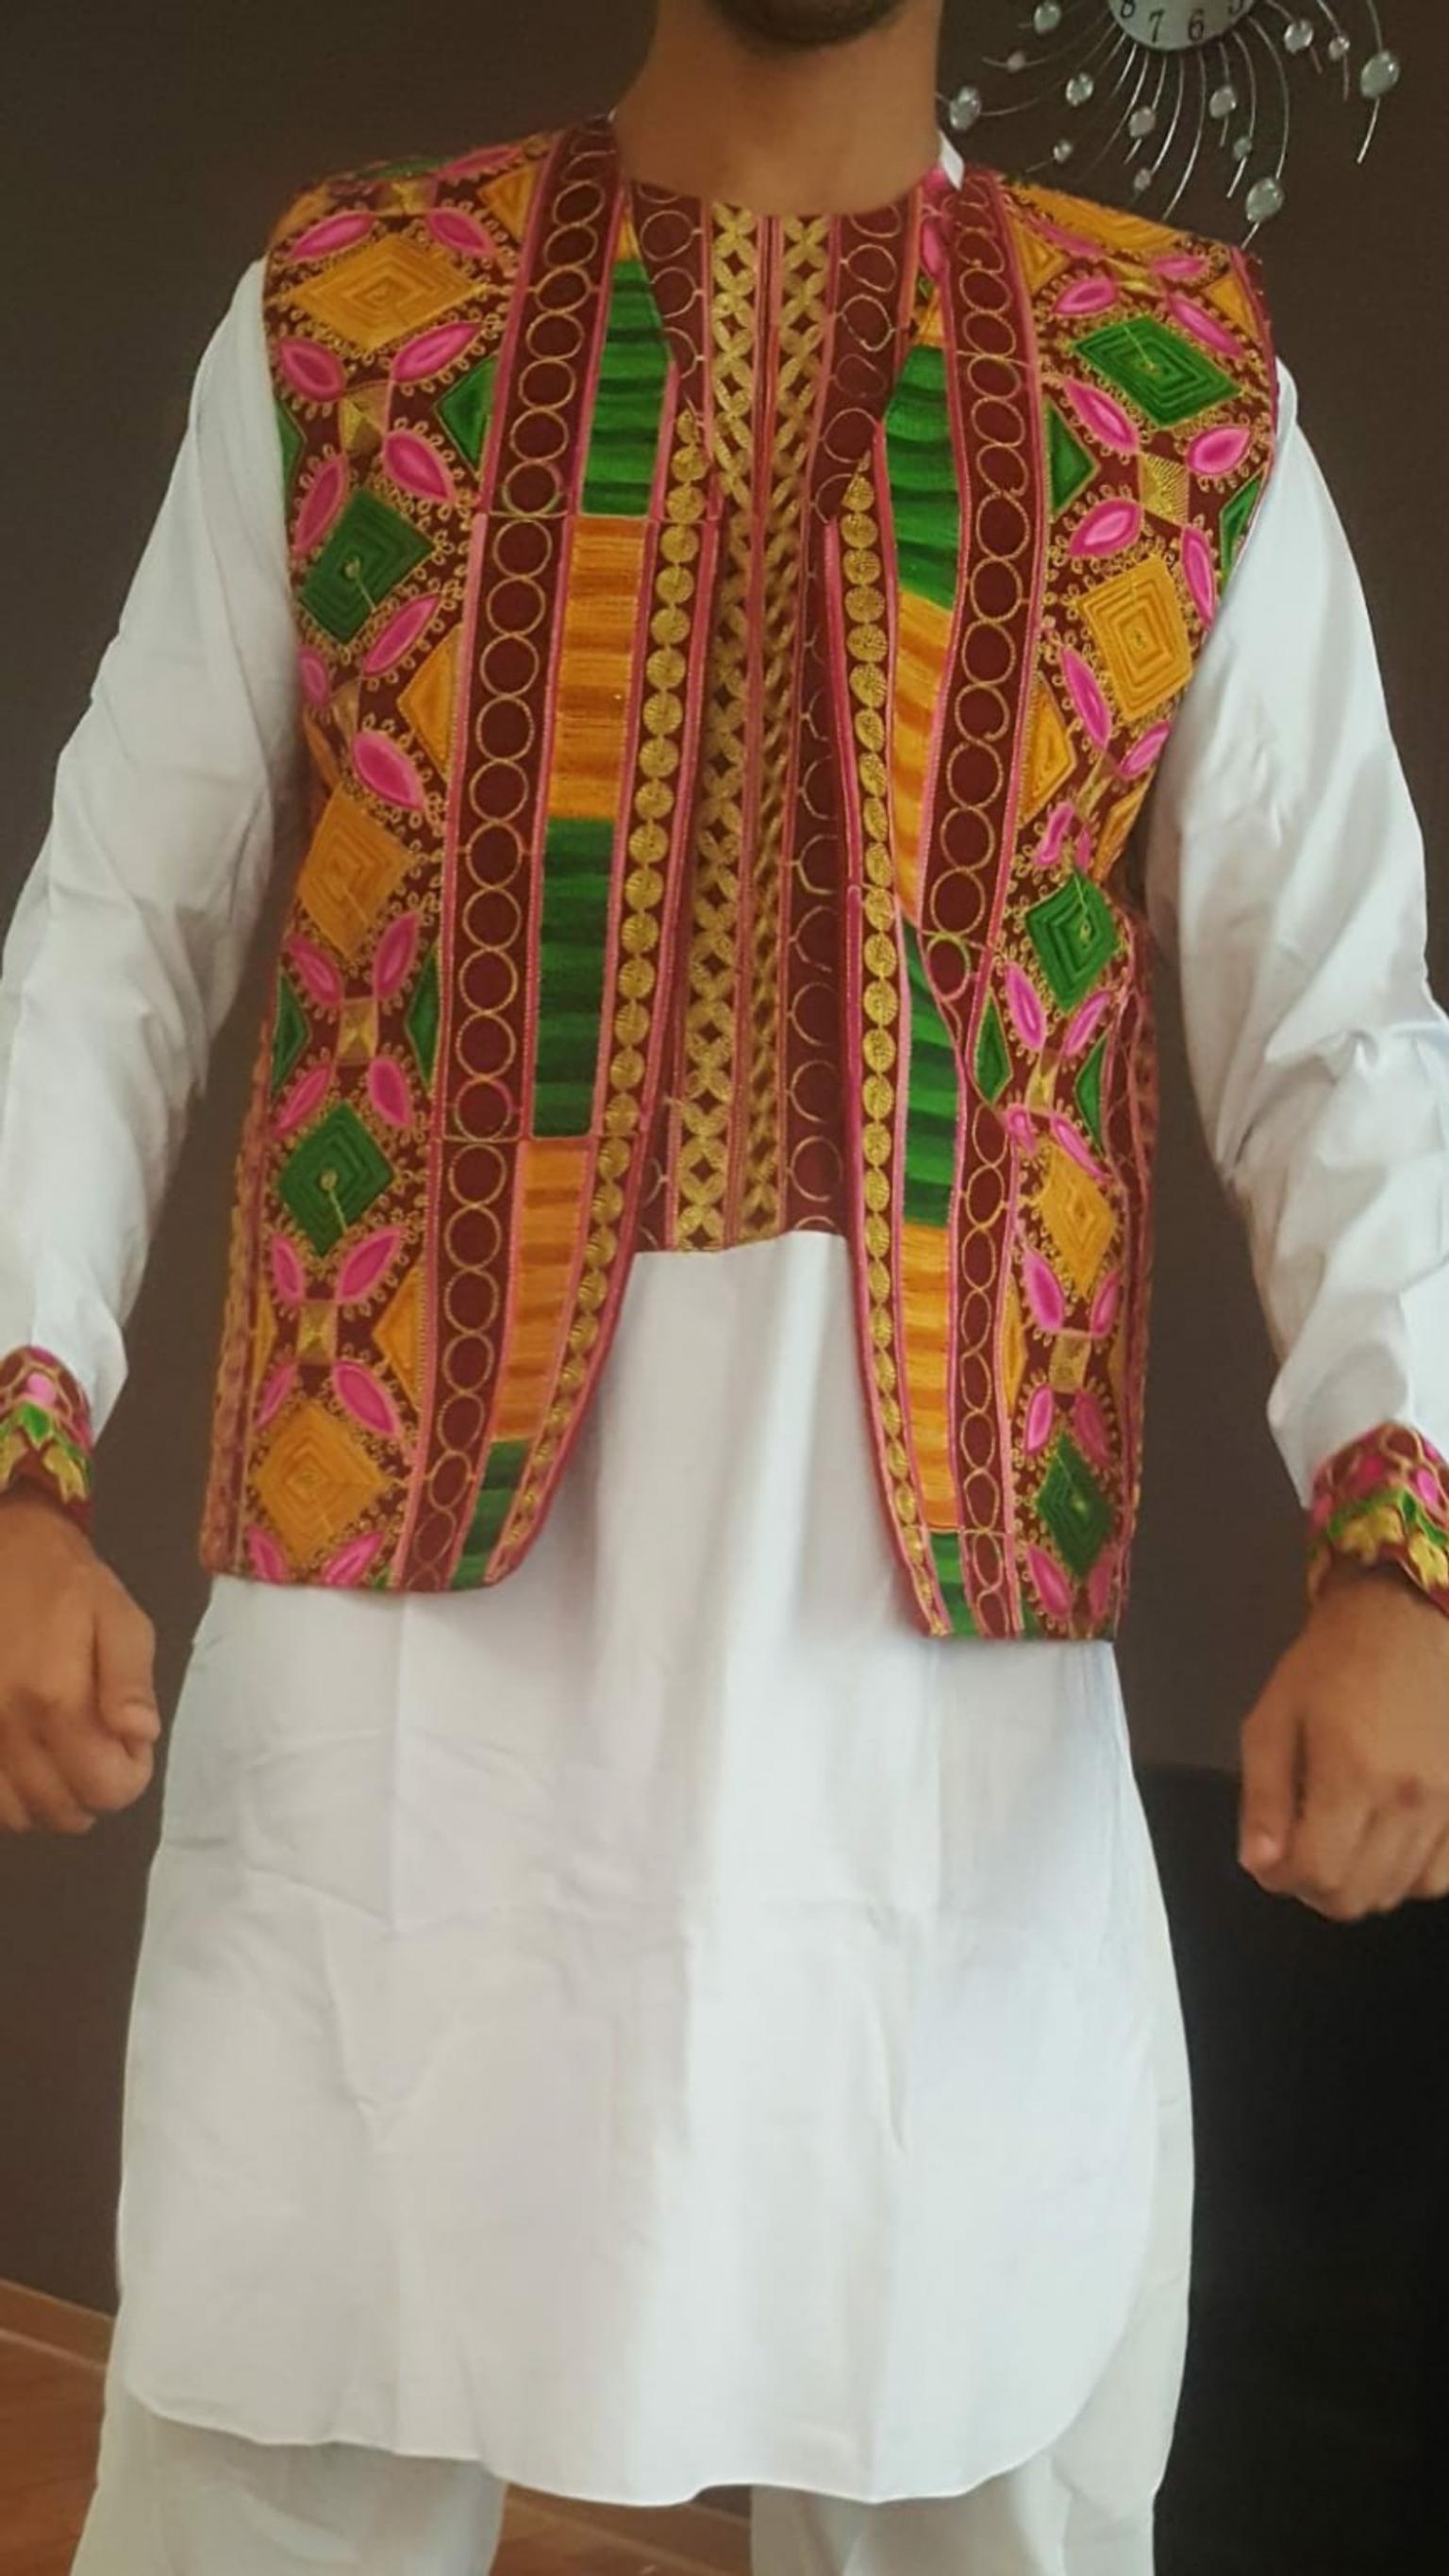 Schone Afghanische Kleid Fur Manner Ganz Neue In Frankfurt Am Main Fur 65 00 Zum Verkauf Shpock De